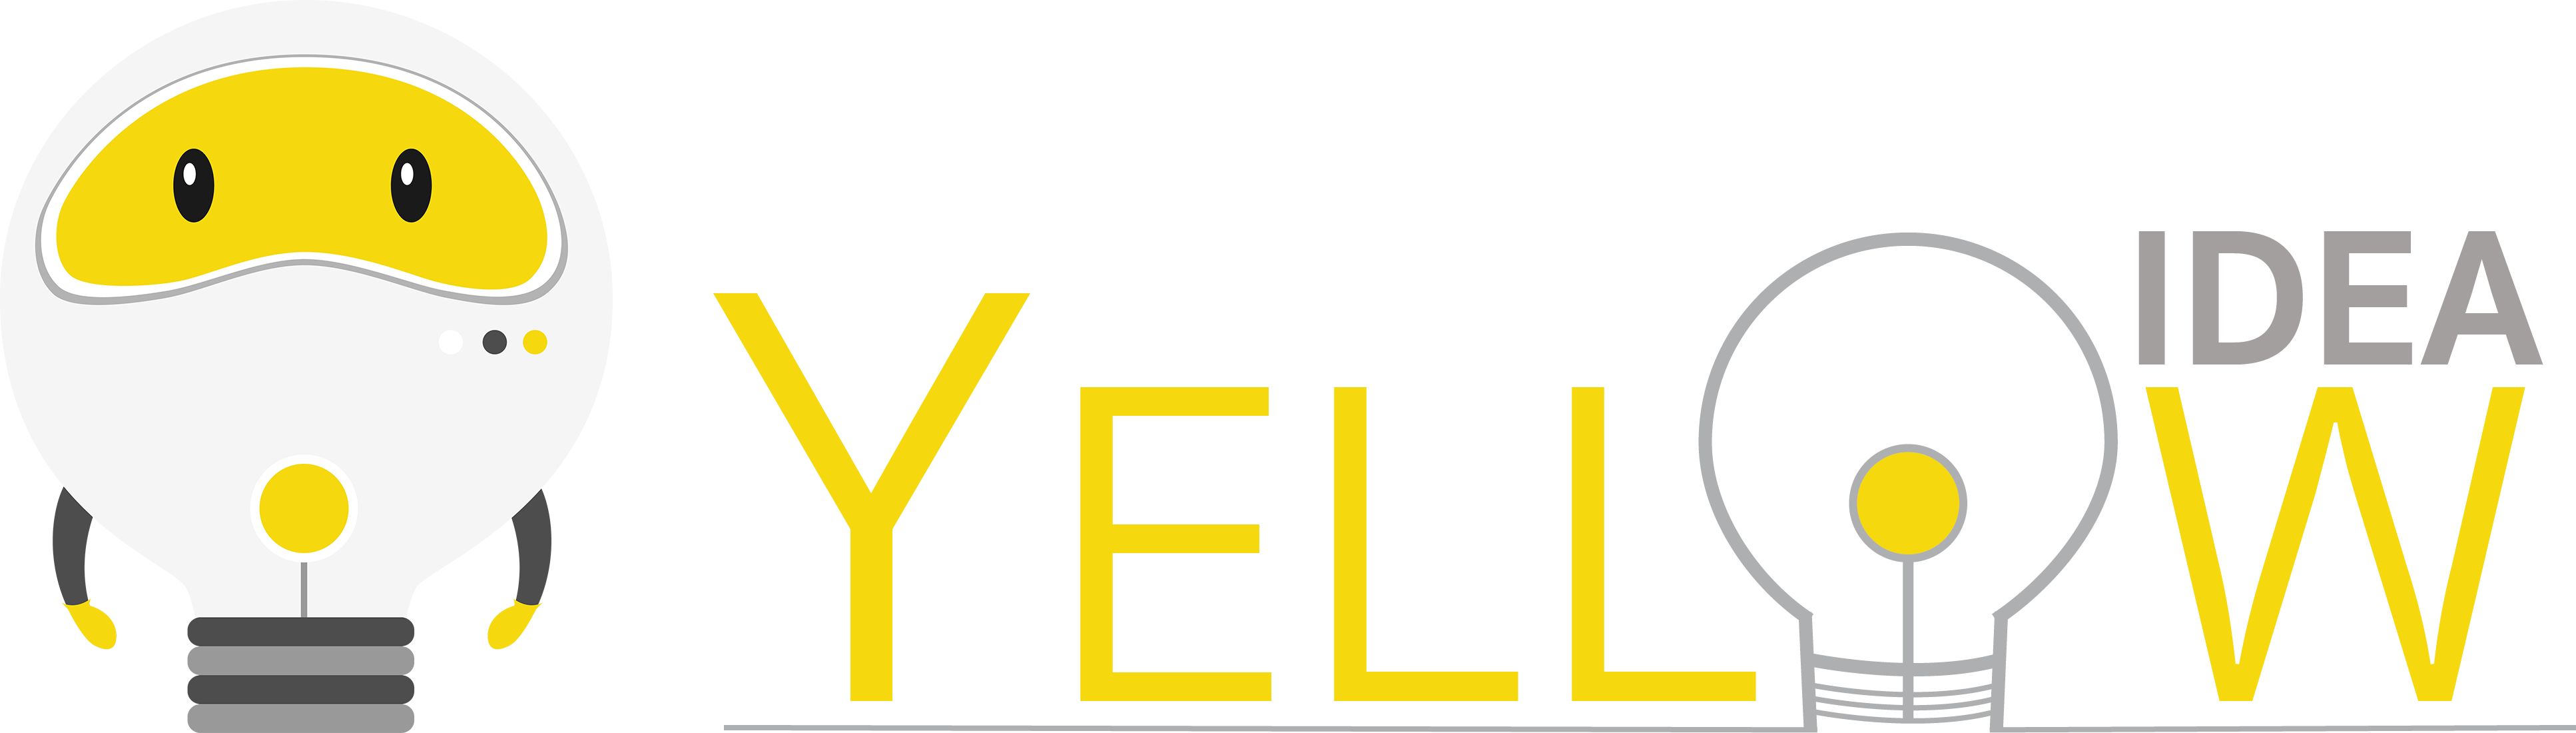 Yellow Idea